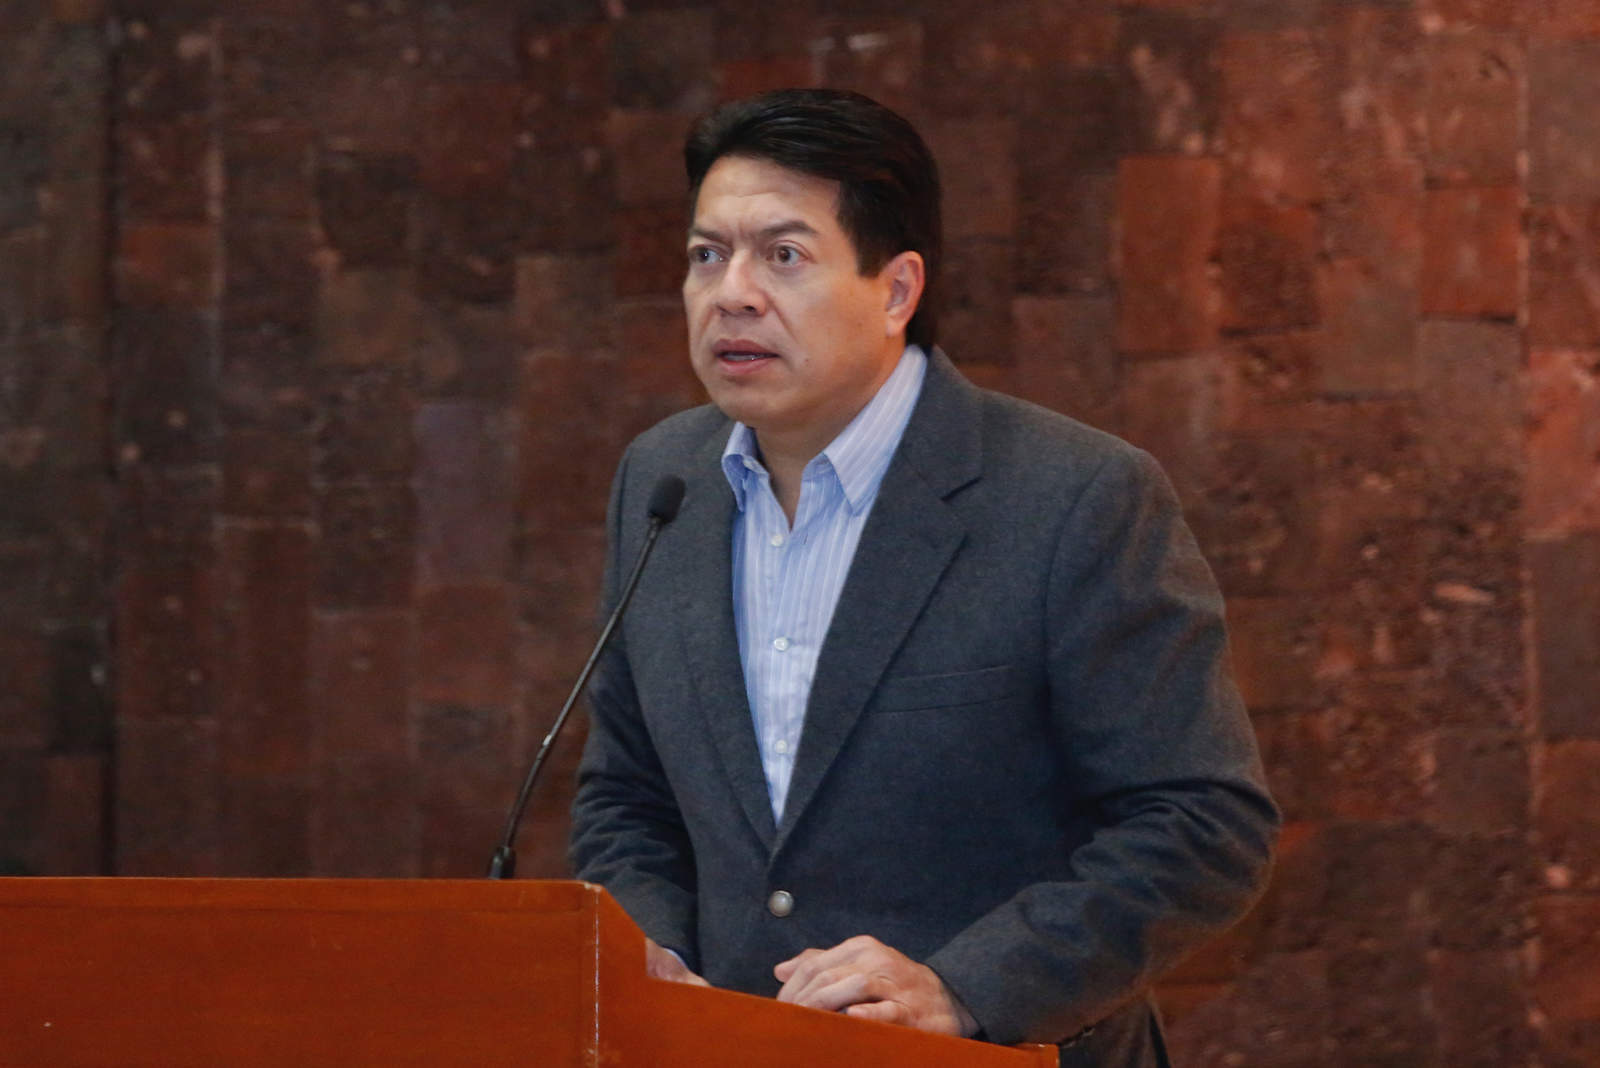 Mario Delgado Carrillo, coordinador del Grupo Parlamentario de Morena, convocó a los legisladores locales de la coalición Juntos Haremos Historia a sacar adelante la agenda prioritaria de la Cuarta Transformación y lograr la pacificación del país. (NOTIMEX)